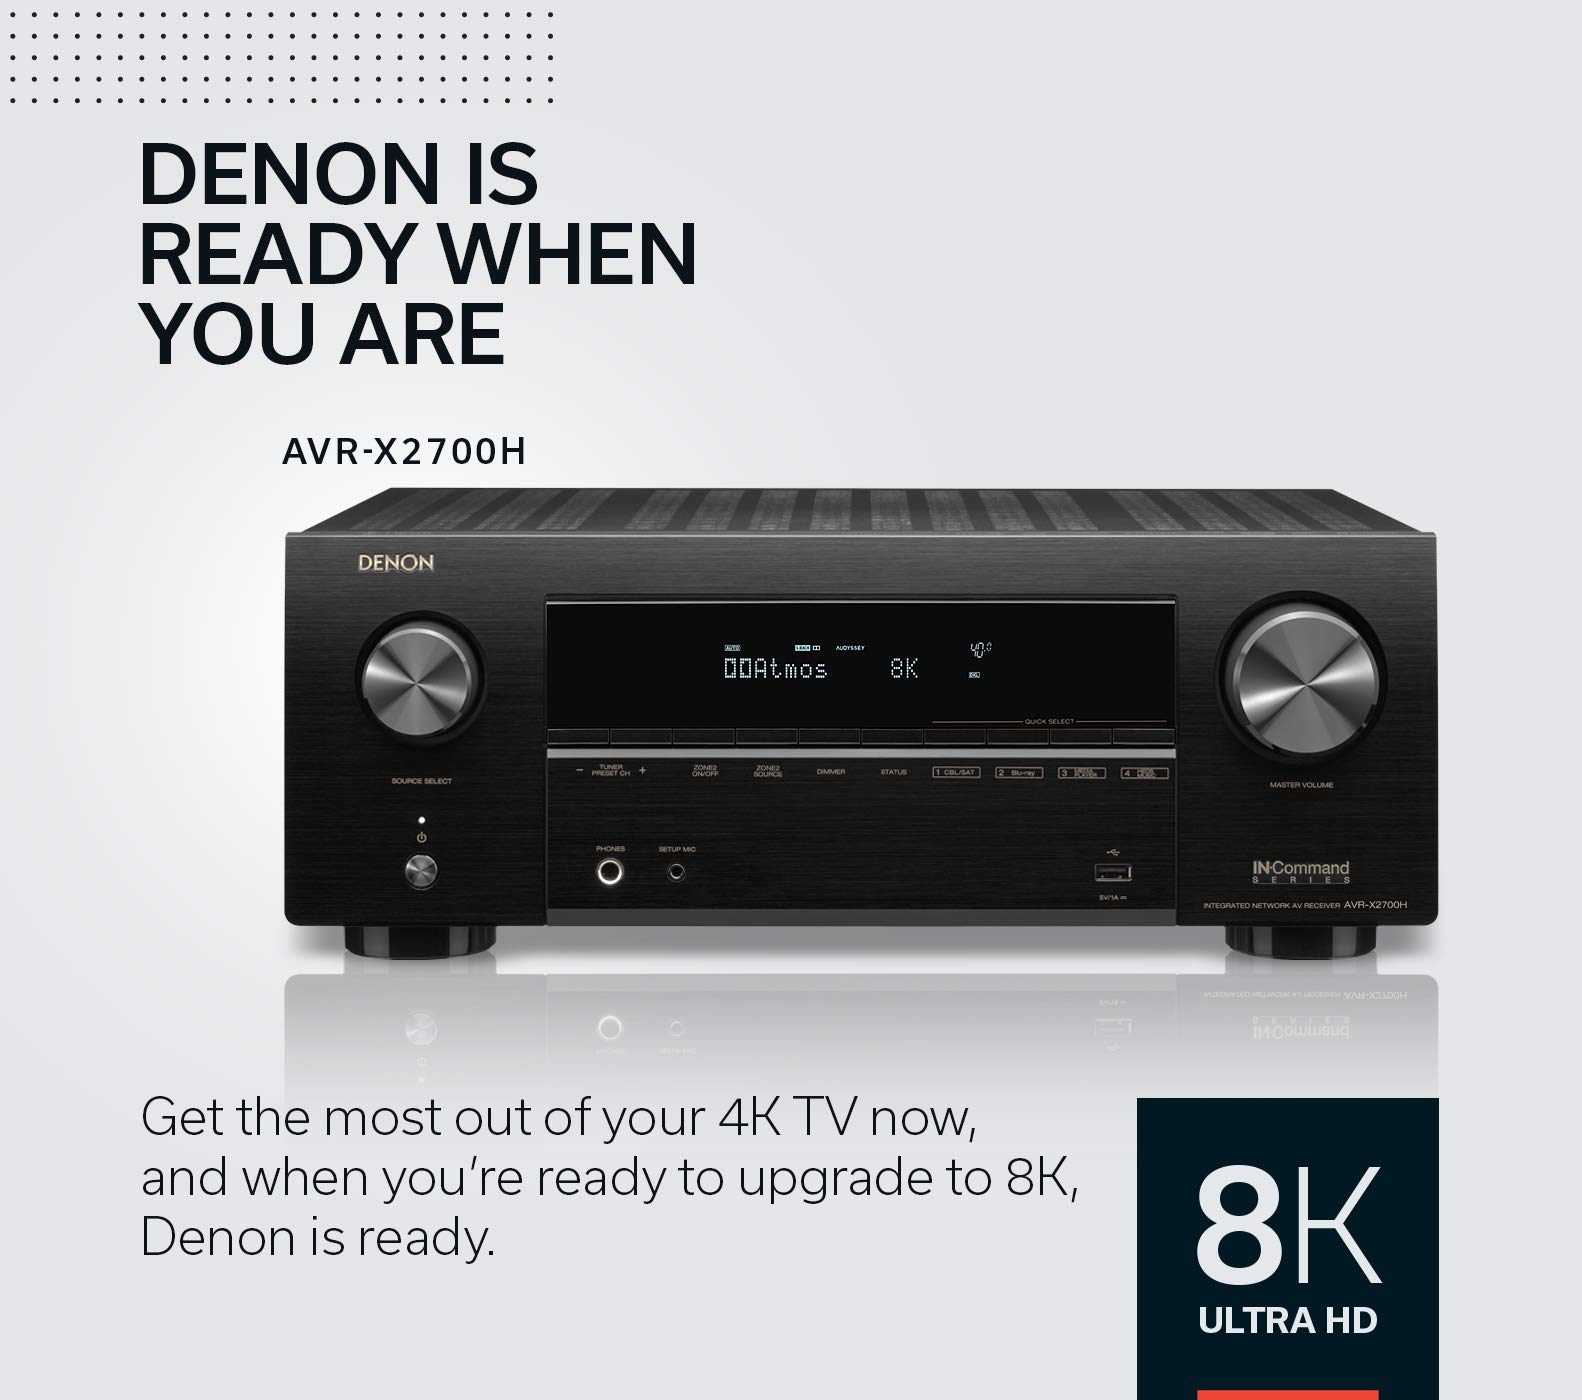 Denon AVR-X2700H 8K Ultra HD 7.2 Channel (95 Watt X 7) AV Receiver 2020 Model - Built for Gaming, Music Streaming, 3D Audio & Video, Alexa + HEOS